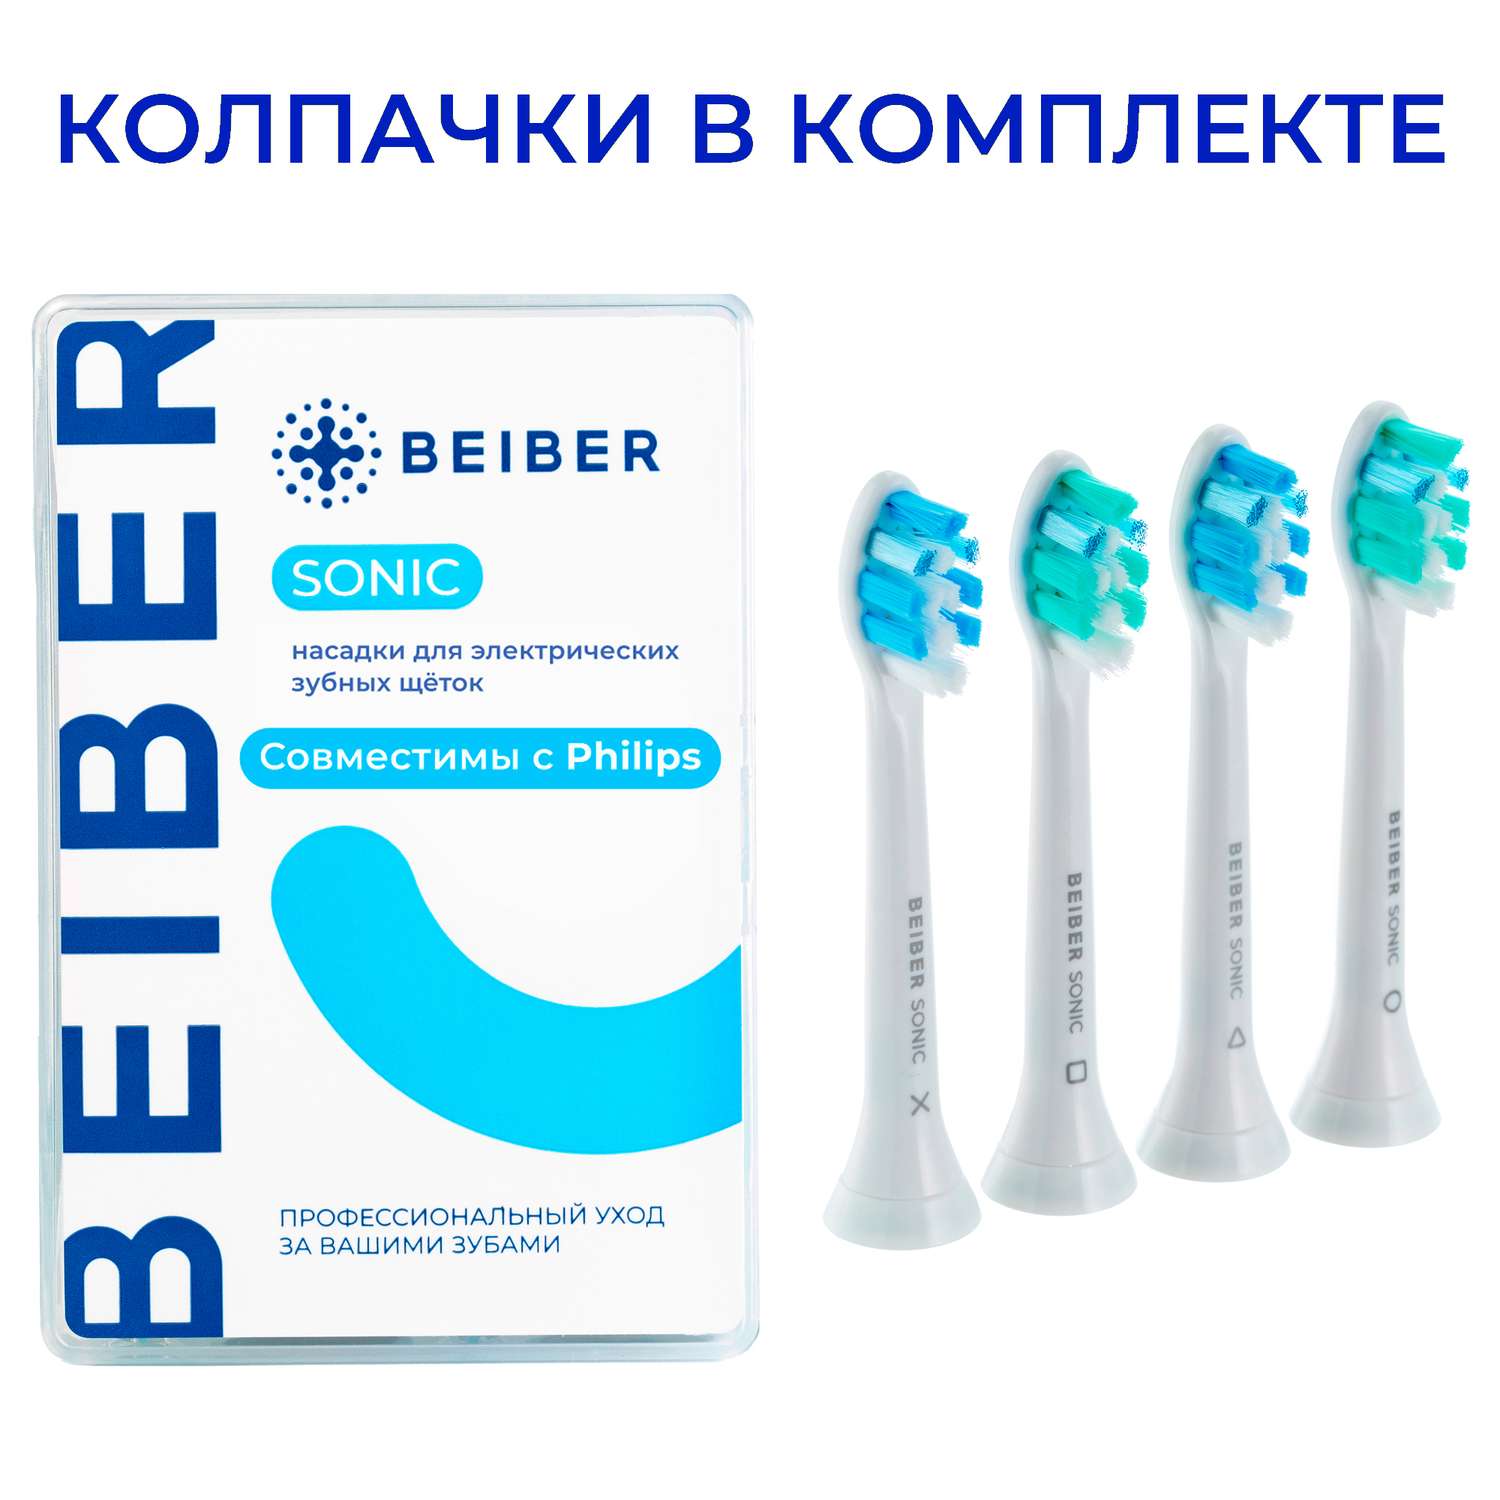 Насадка на зубную щетку BEIBER совместимо с Philips Sonic 4 шт - фото 1